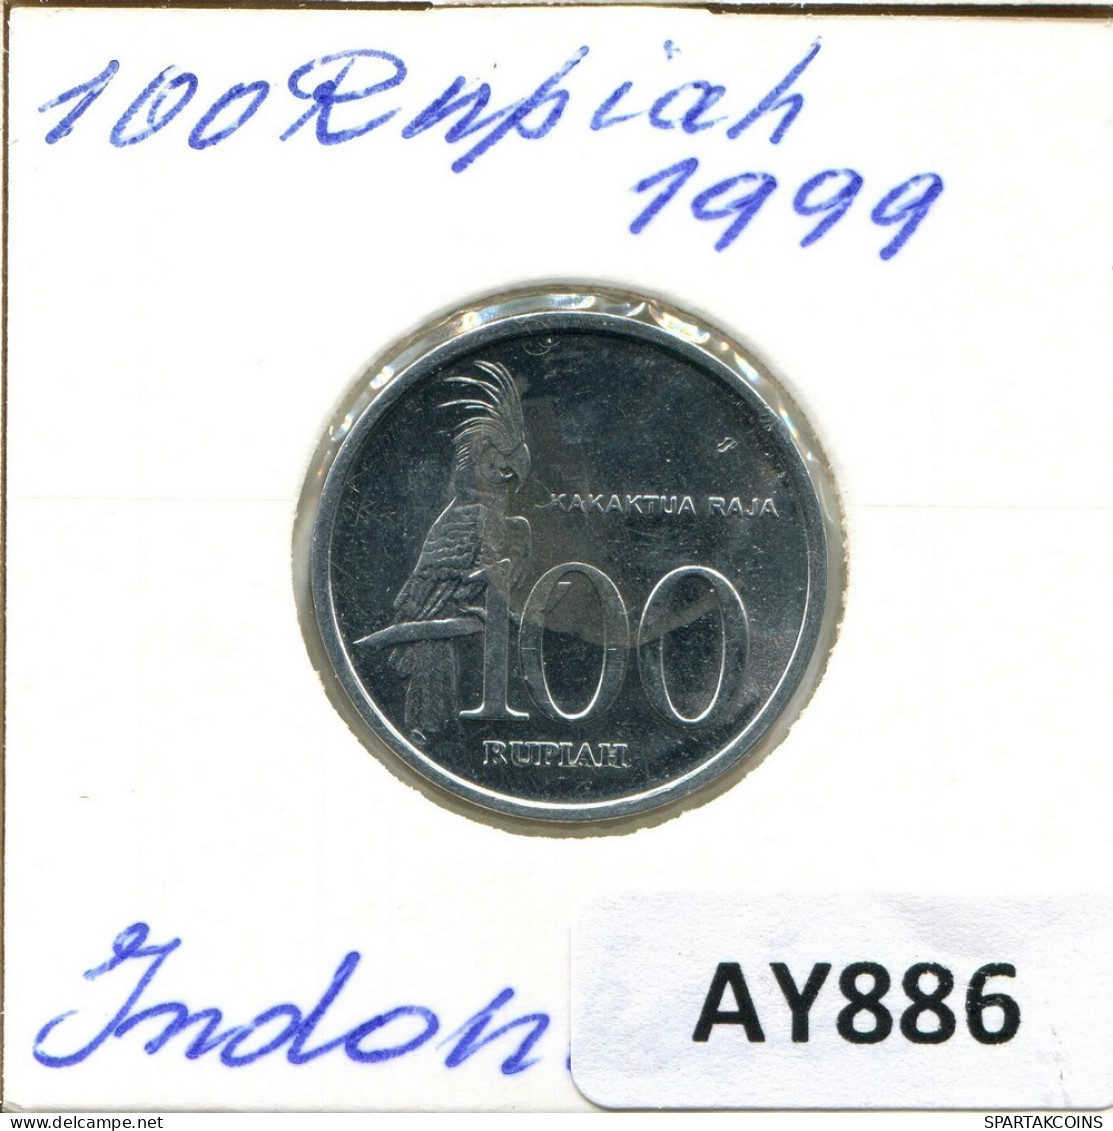 100 RUPIAH 1999 INDONESIA Coin #AY886.U.A - Indonesia